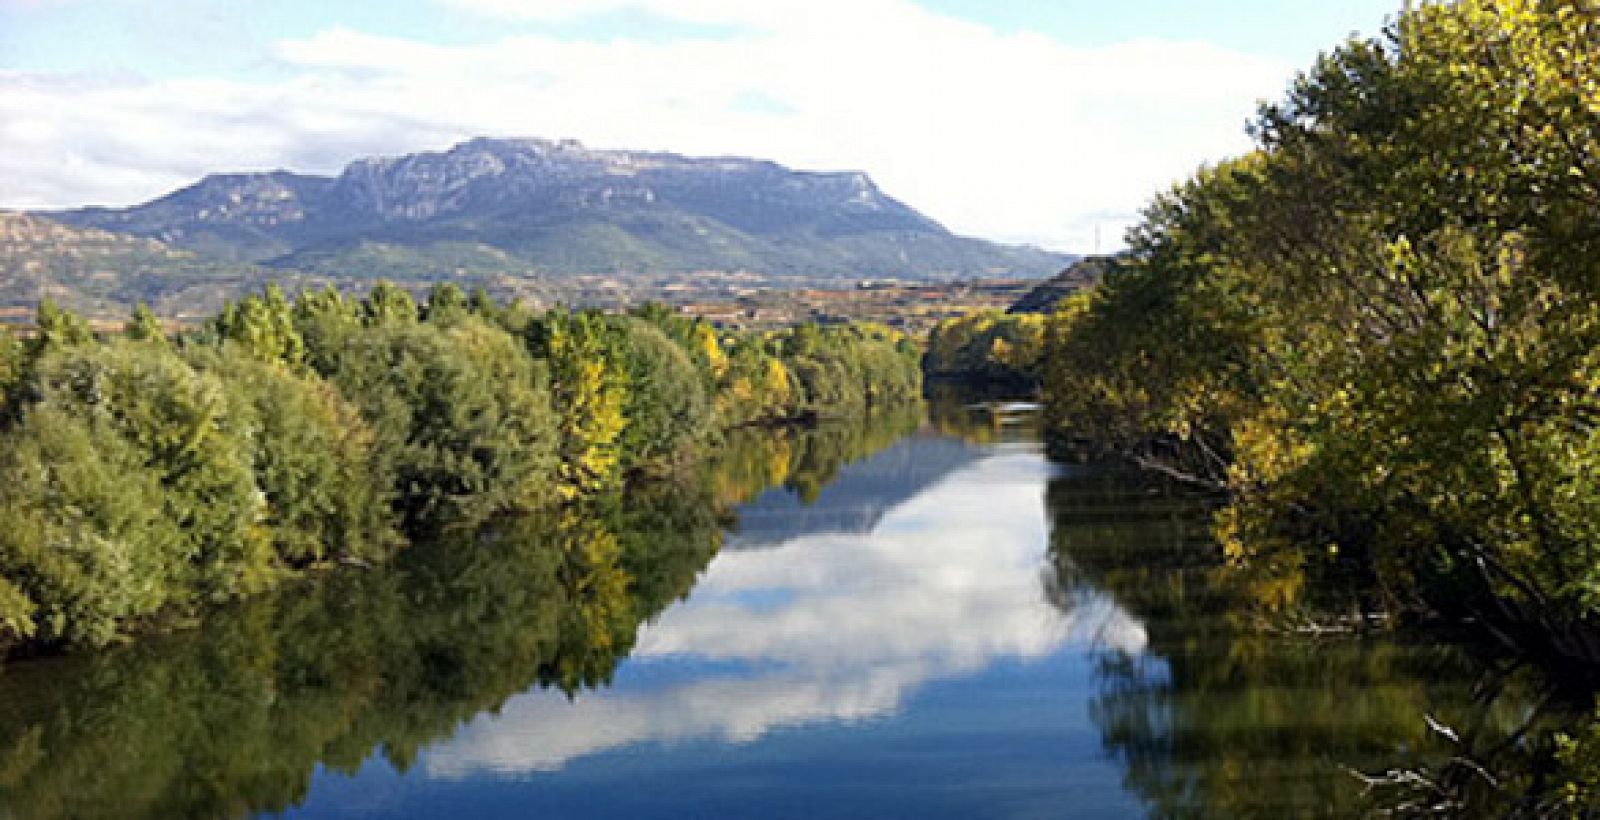 La orilla sur del río Ebro, cerca de la ciudad de Haro, separa la Rioja Alavesa, a la derecha de la imagen, de la Rioja Alta, a la izquierda.